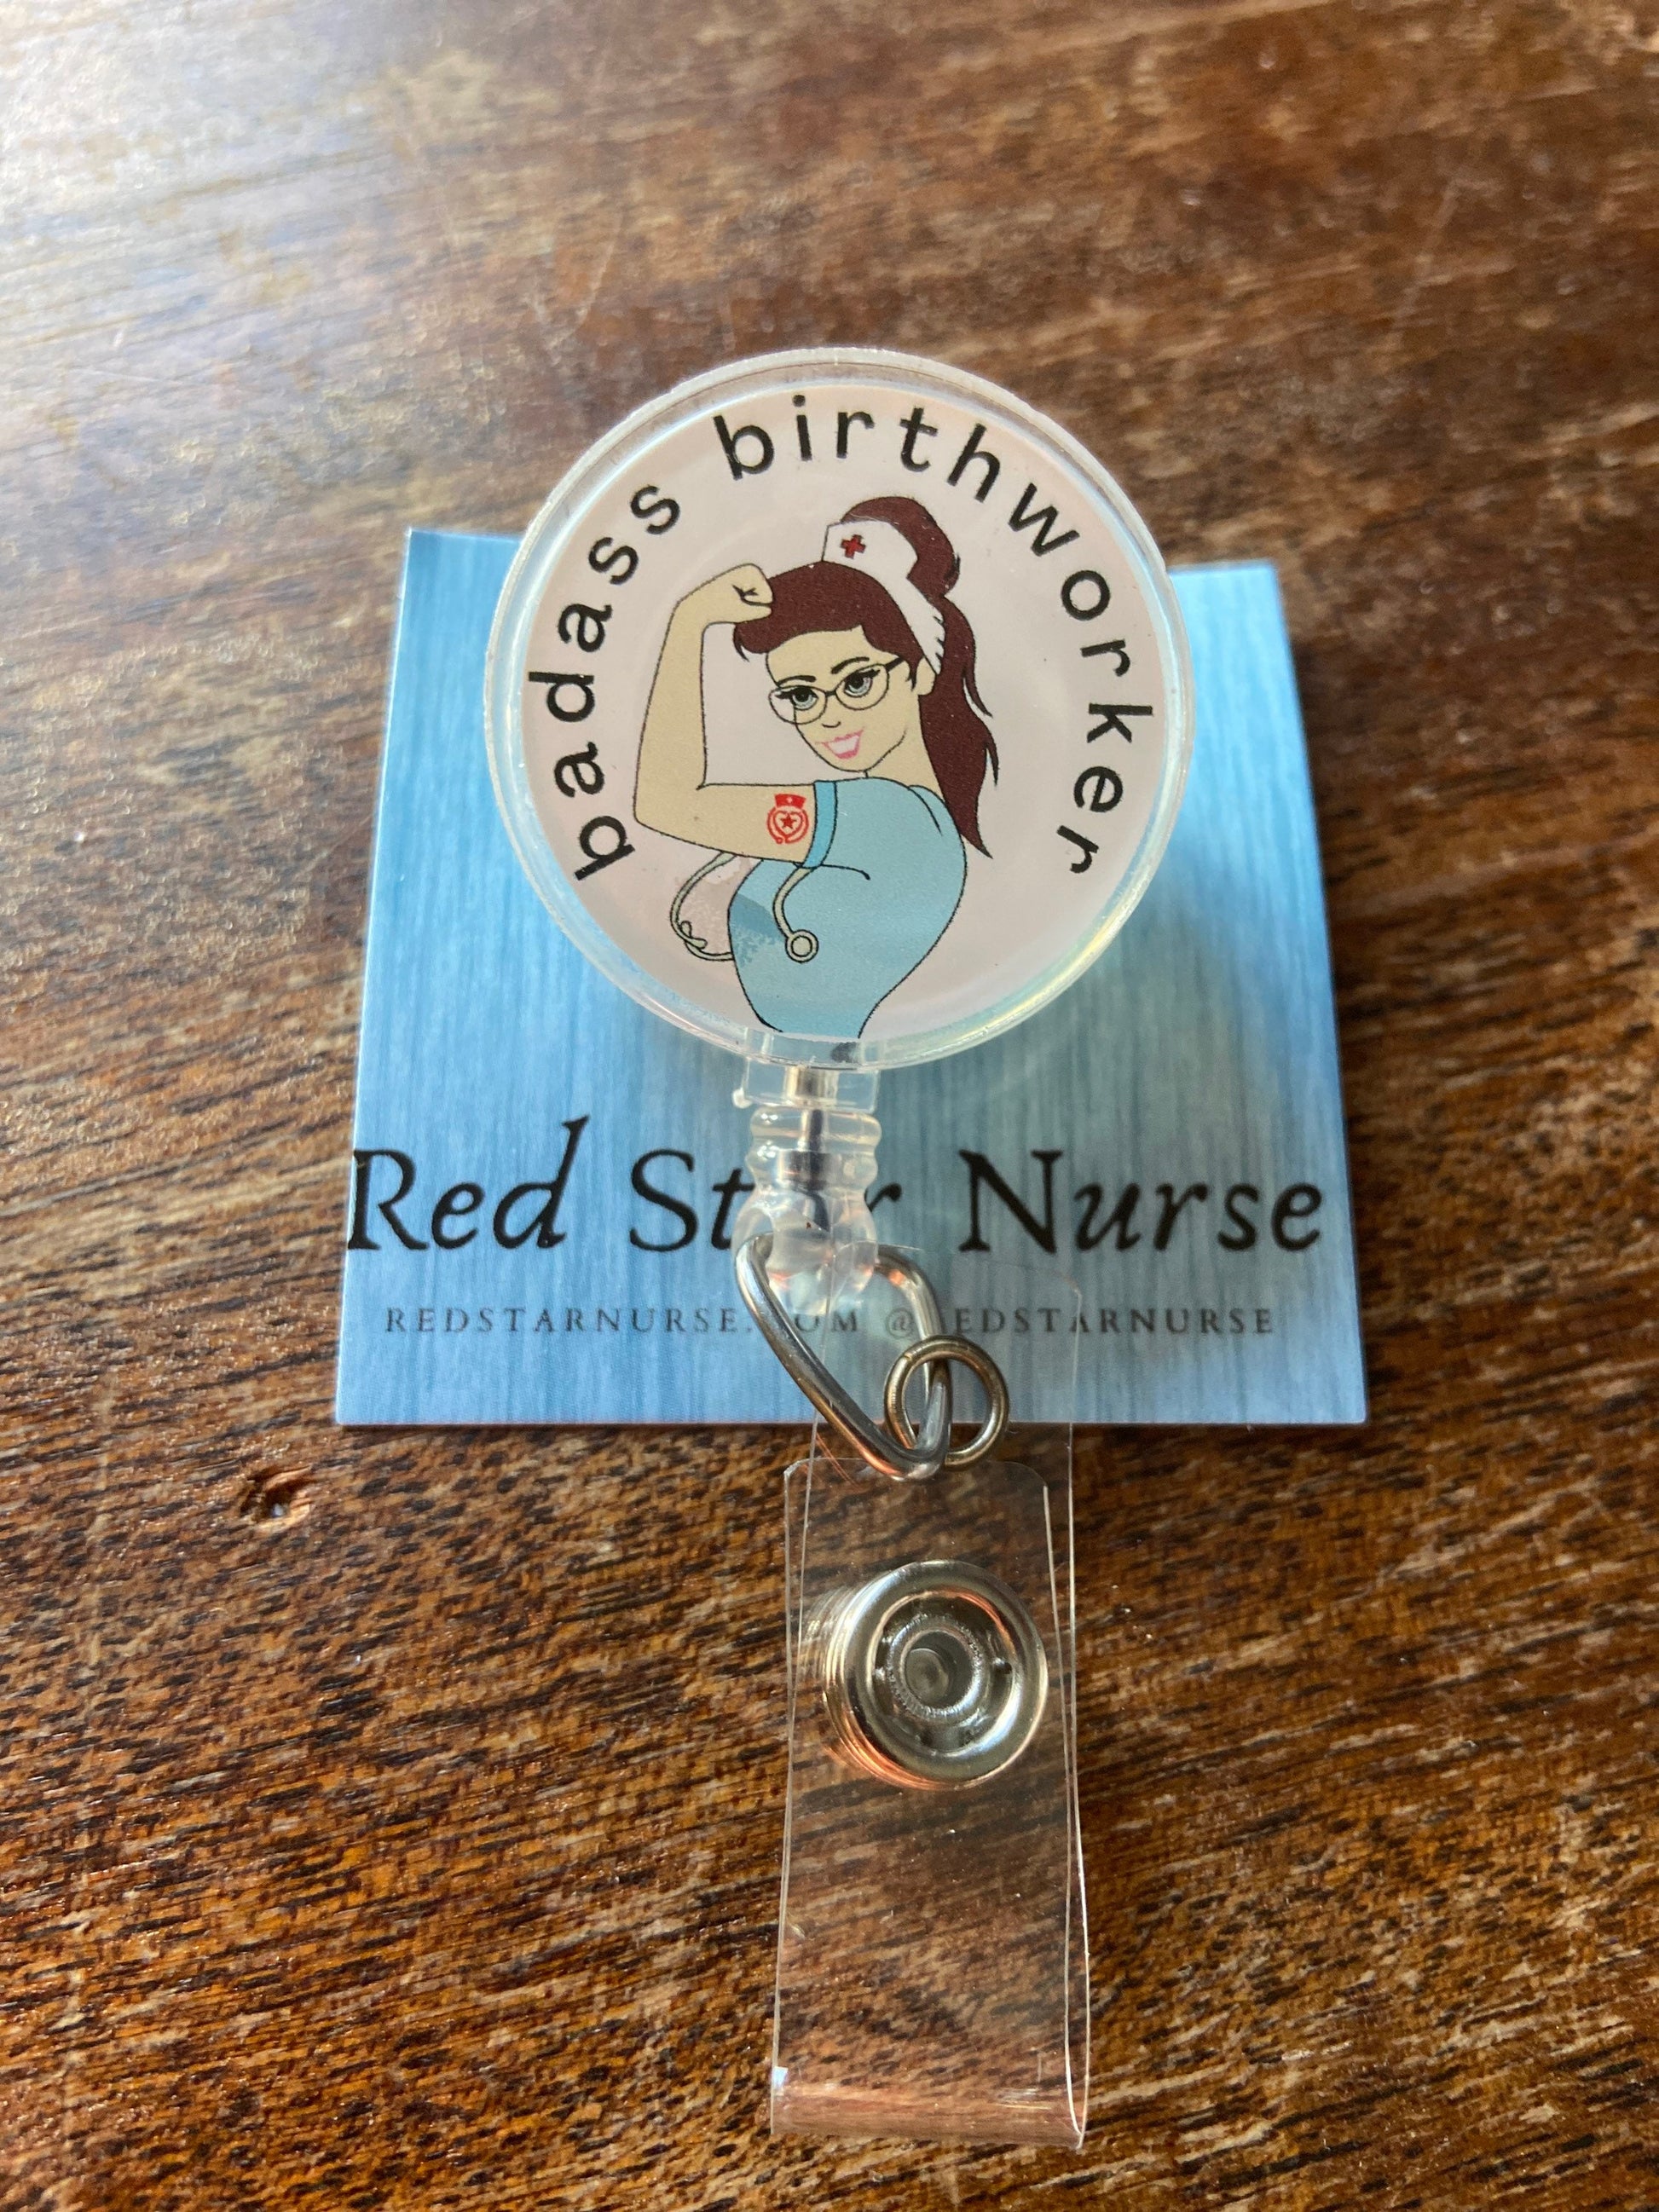 Nurse Amy